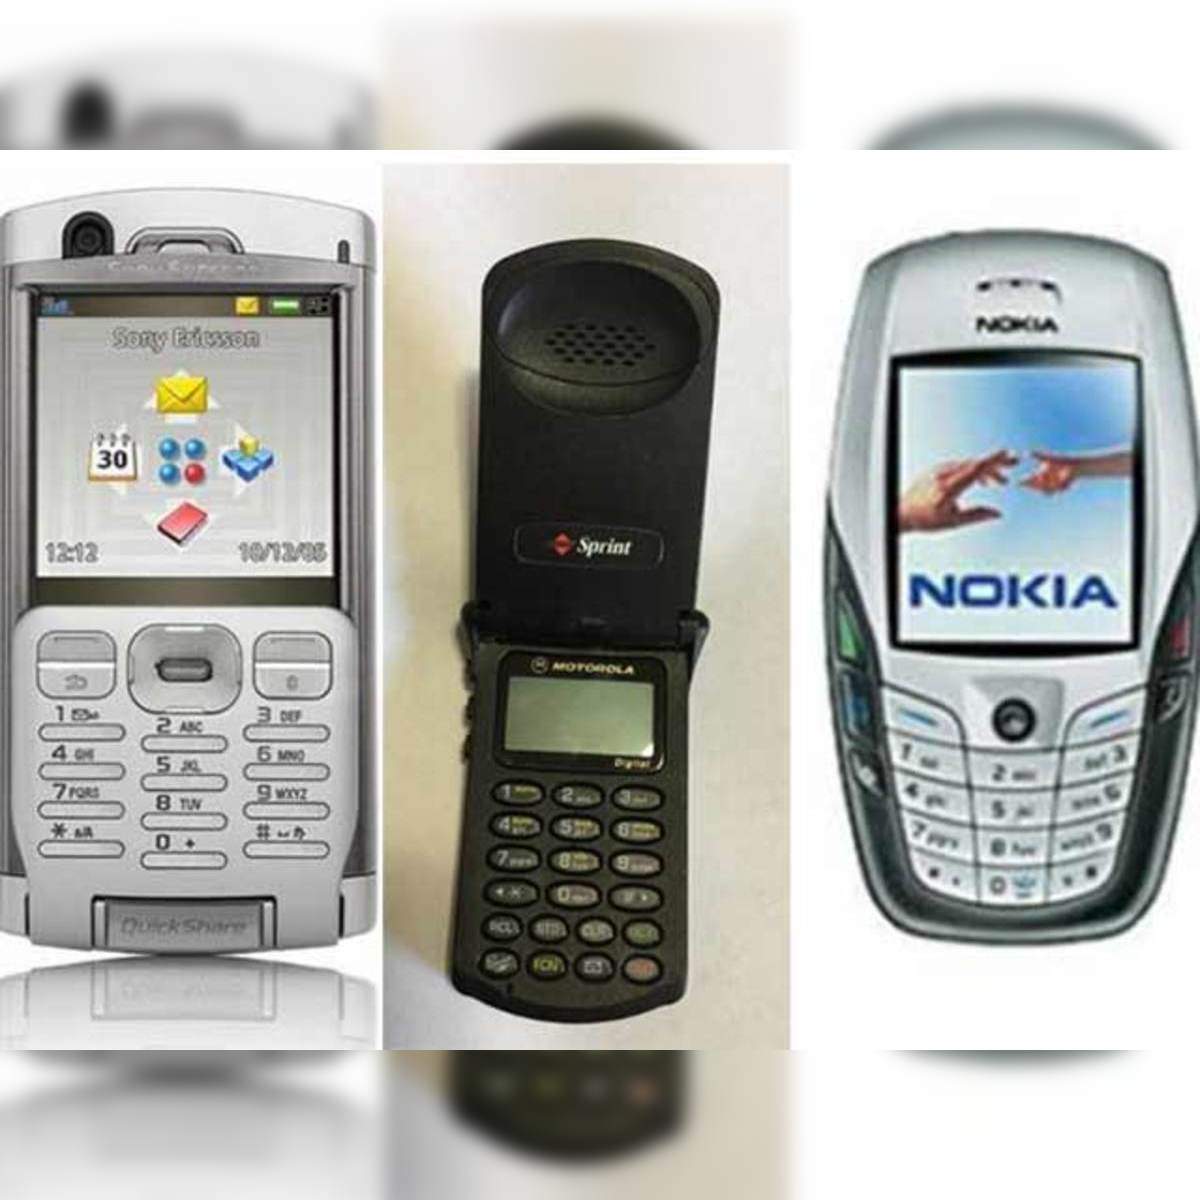 Nokia 6230 - Wikipedia